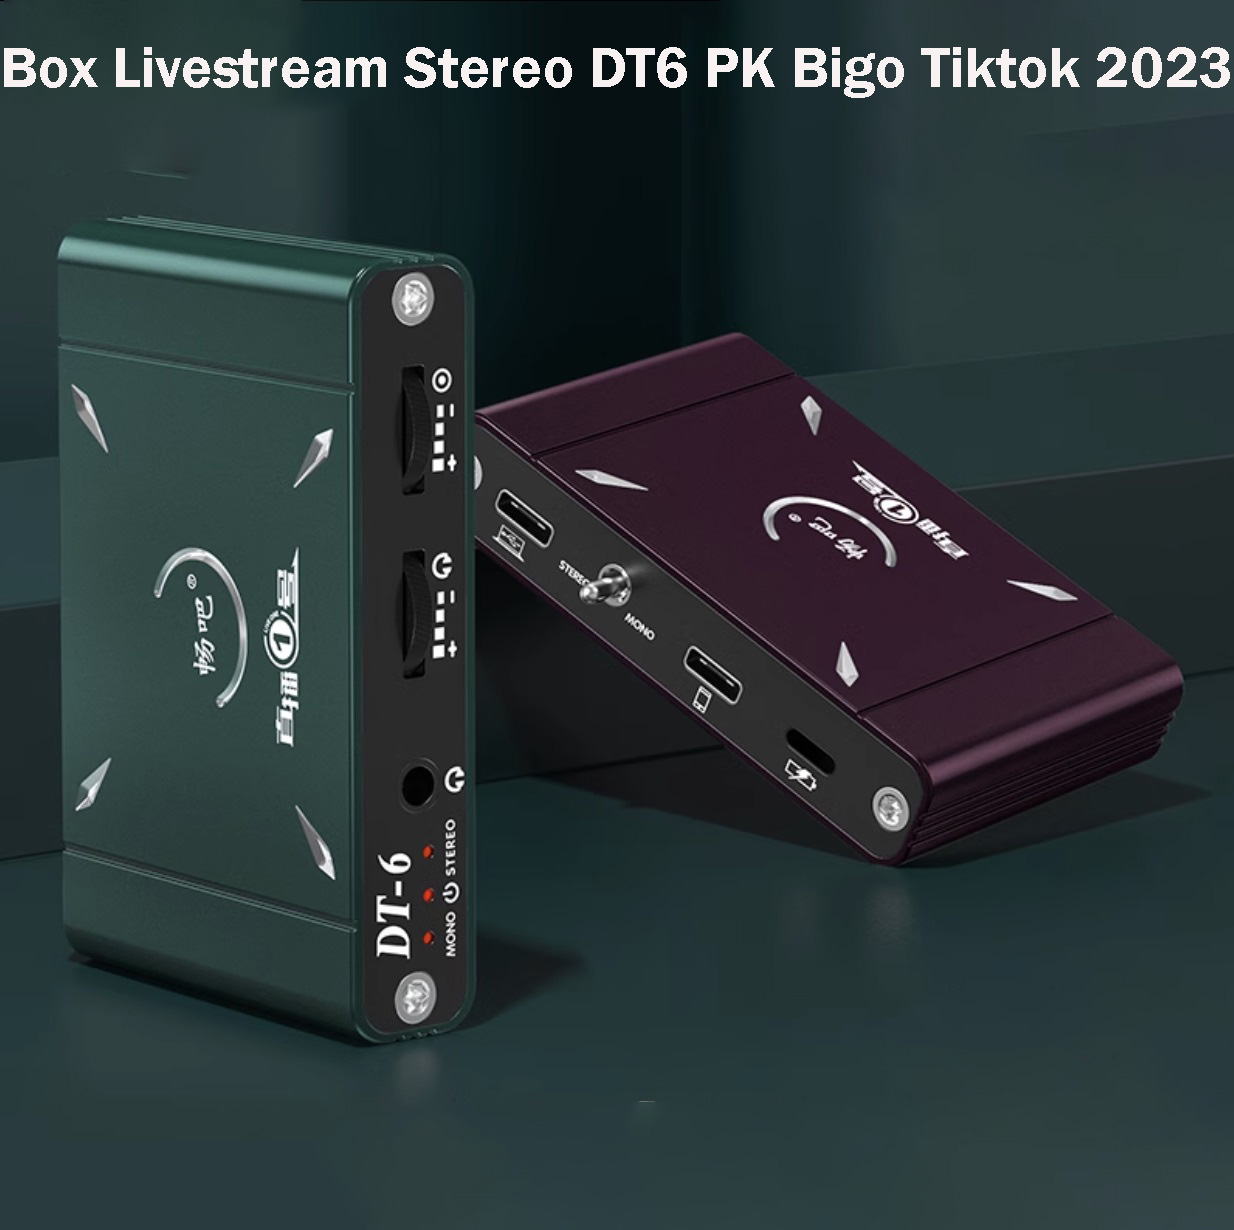 ( SIÊU PHẨM 2023 ) Thiết Bị Livestream Stereo DT6 PK Bigo Tiktok - BOX Livestream Stereo 3D + Mono DT-6 Vừa Sạc Vừa Live  Hỗ Trợ PK Cho iPhone Thiết Kế Nhôm Nguyên Khối Tăng Độ Bền Và Khả Năng Tản Nhiệt , Hỗ Trợ IOS Và Android